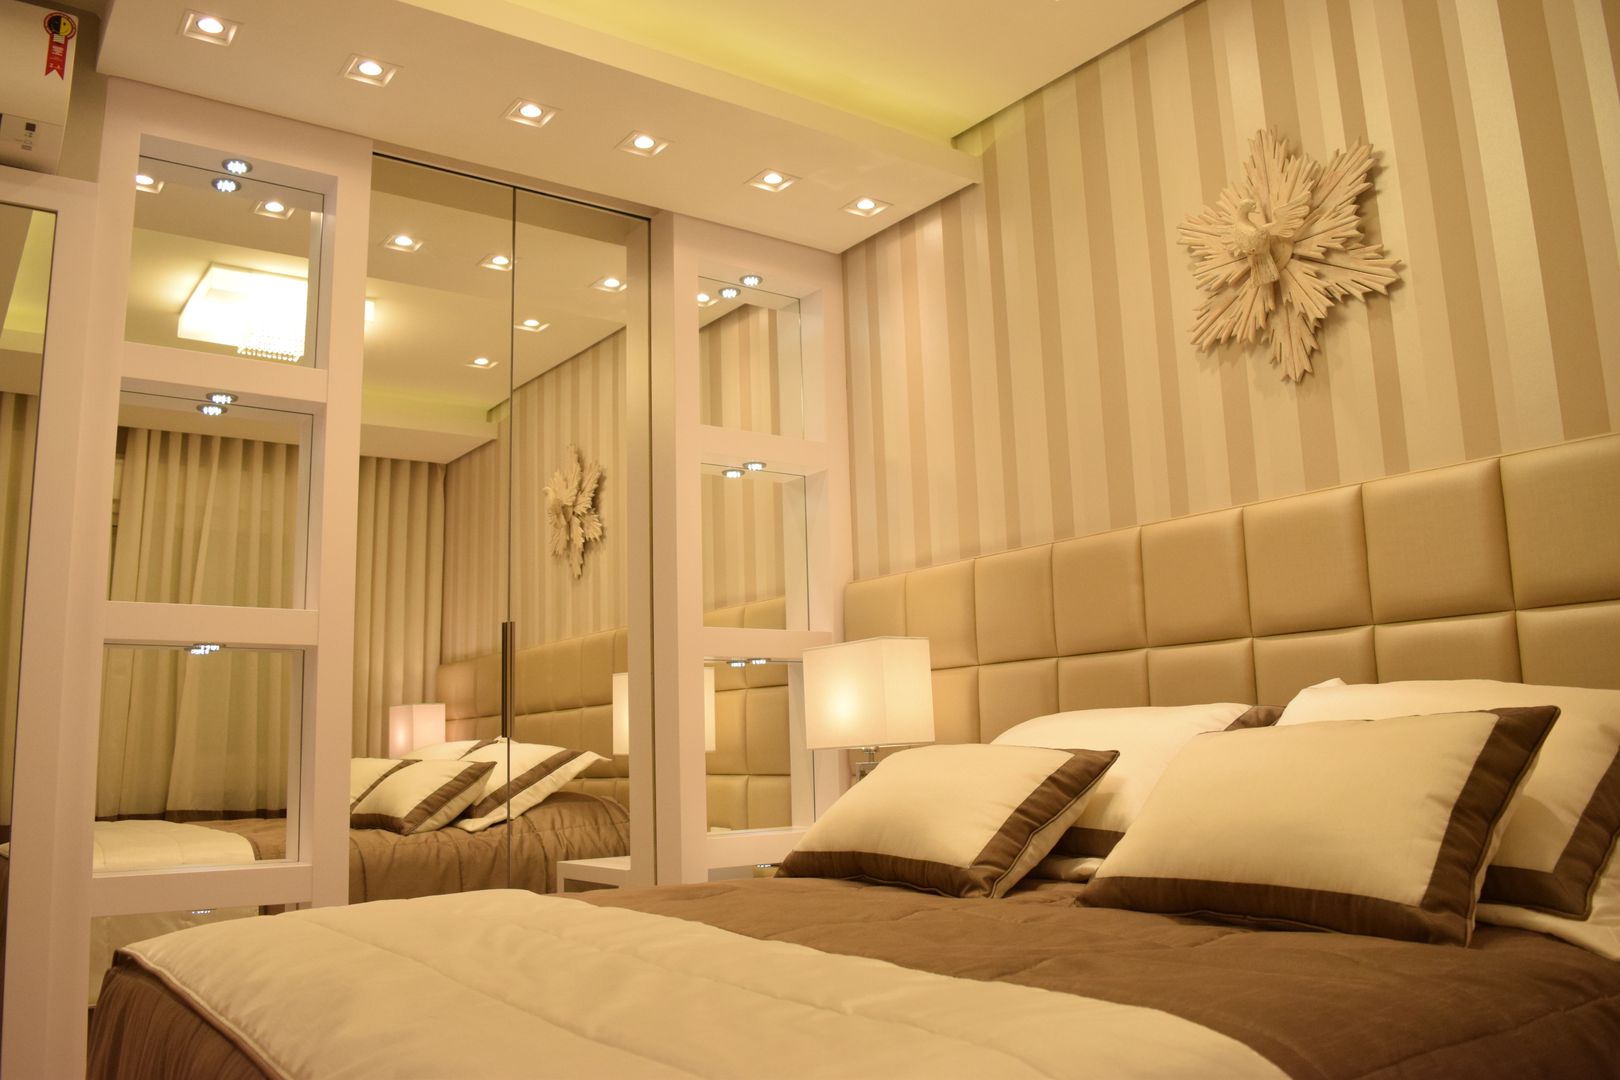 ​Quarto de Casal Contemporâneo, DecaZa Design DecaZa Design Modern Bedroom MDF